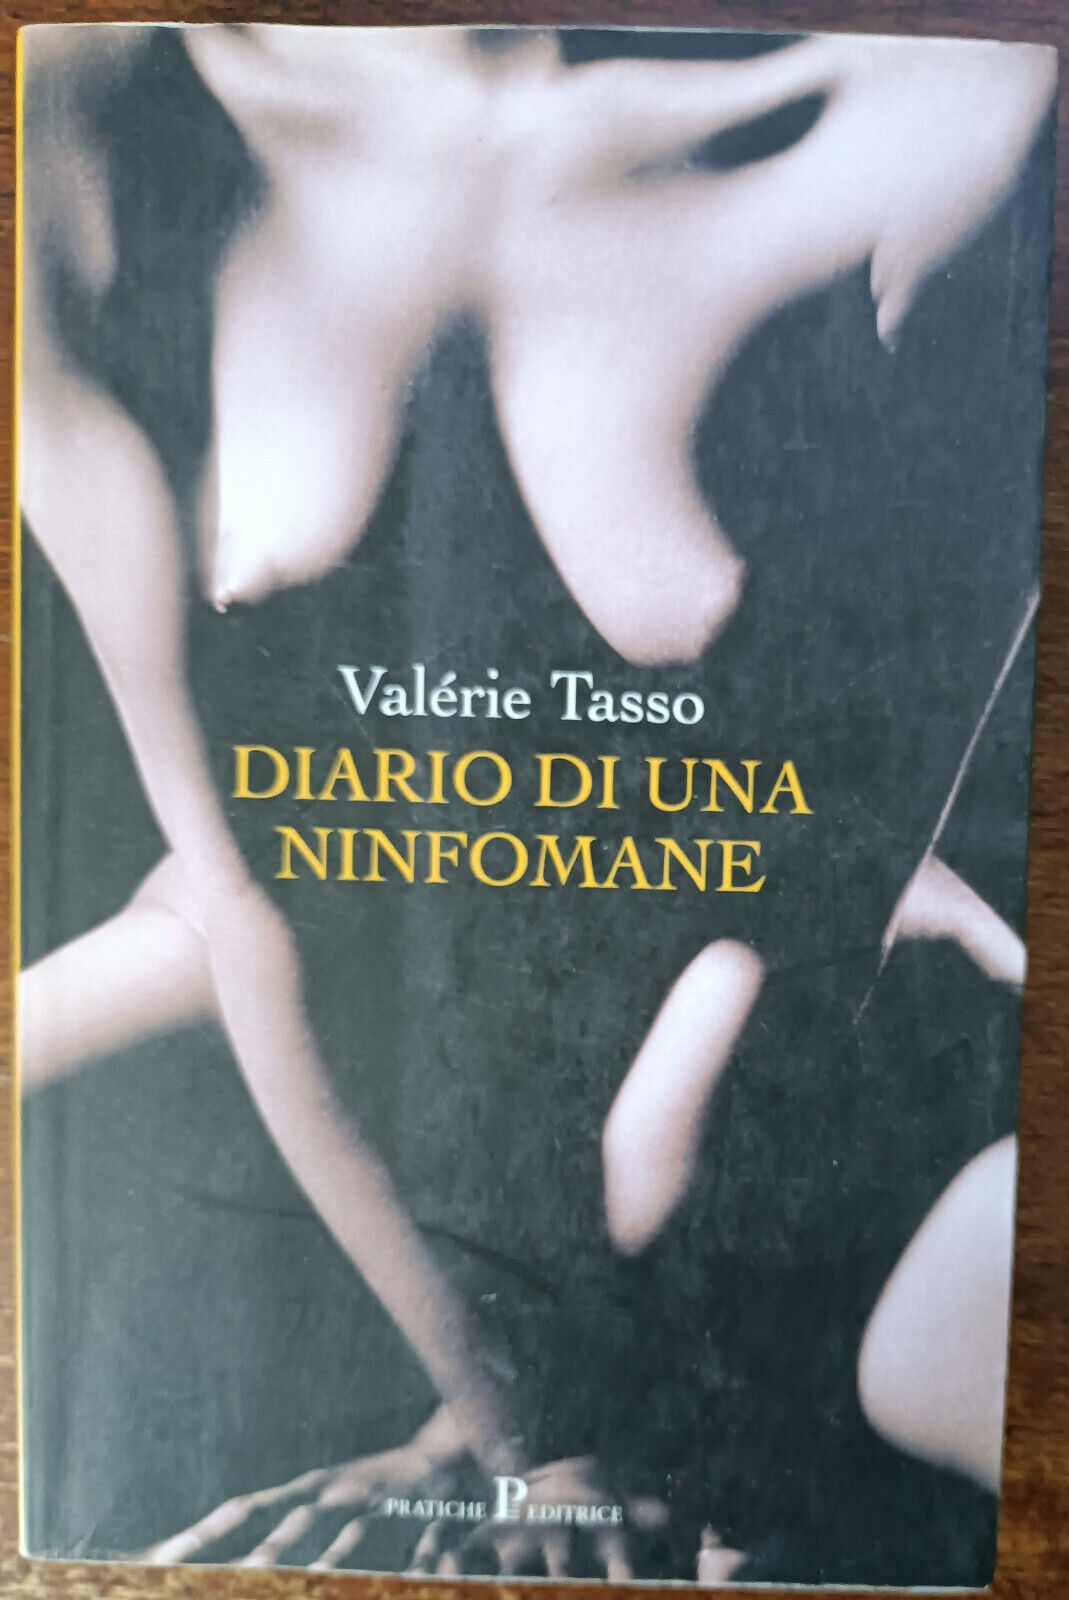 Diario di una ninfomane - Val?rie Tasso - Pratiche, 2004 - A